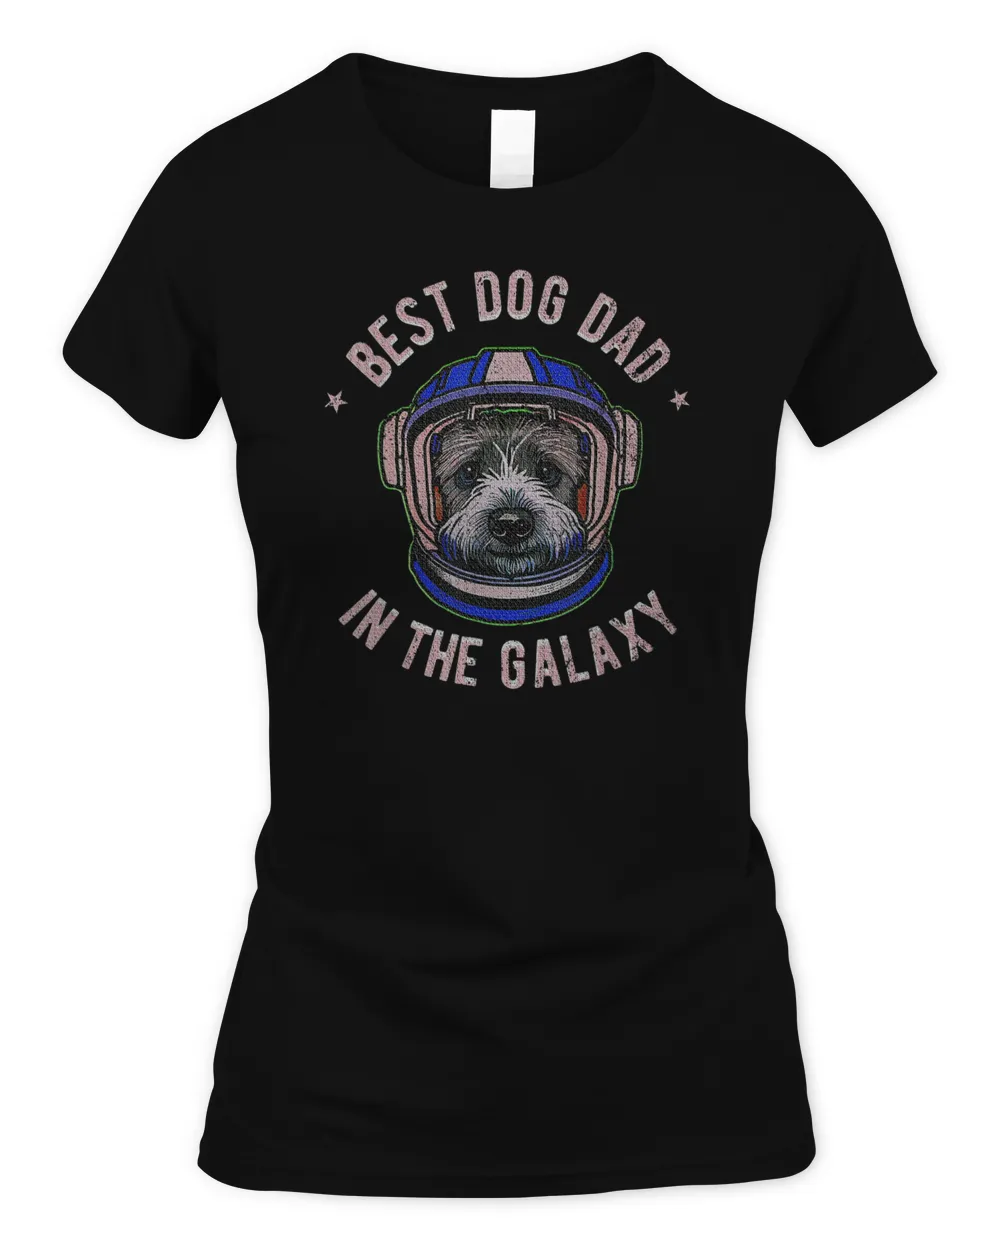 The Best Schnauzer dog Dad in the galaxy - Schnauzer